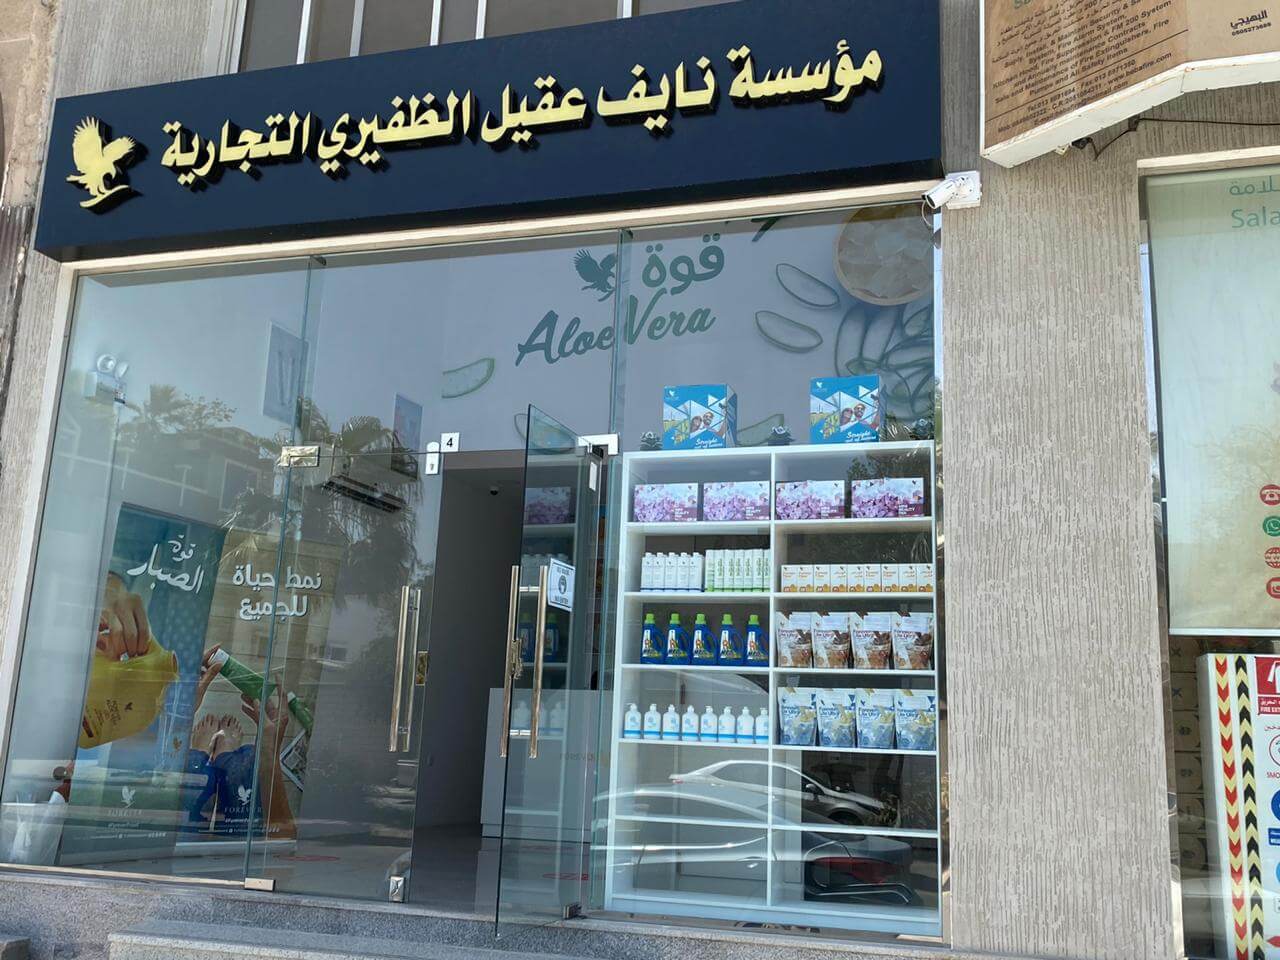 افتتاح فرع جديد لشركة فوريفر في الخبر بالمملكة العربية السعودية